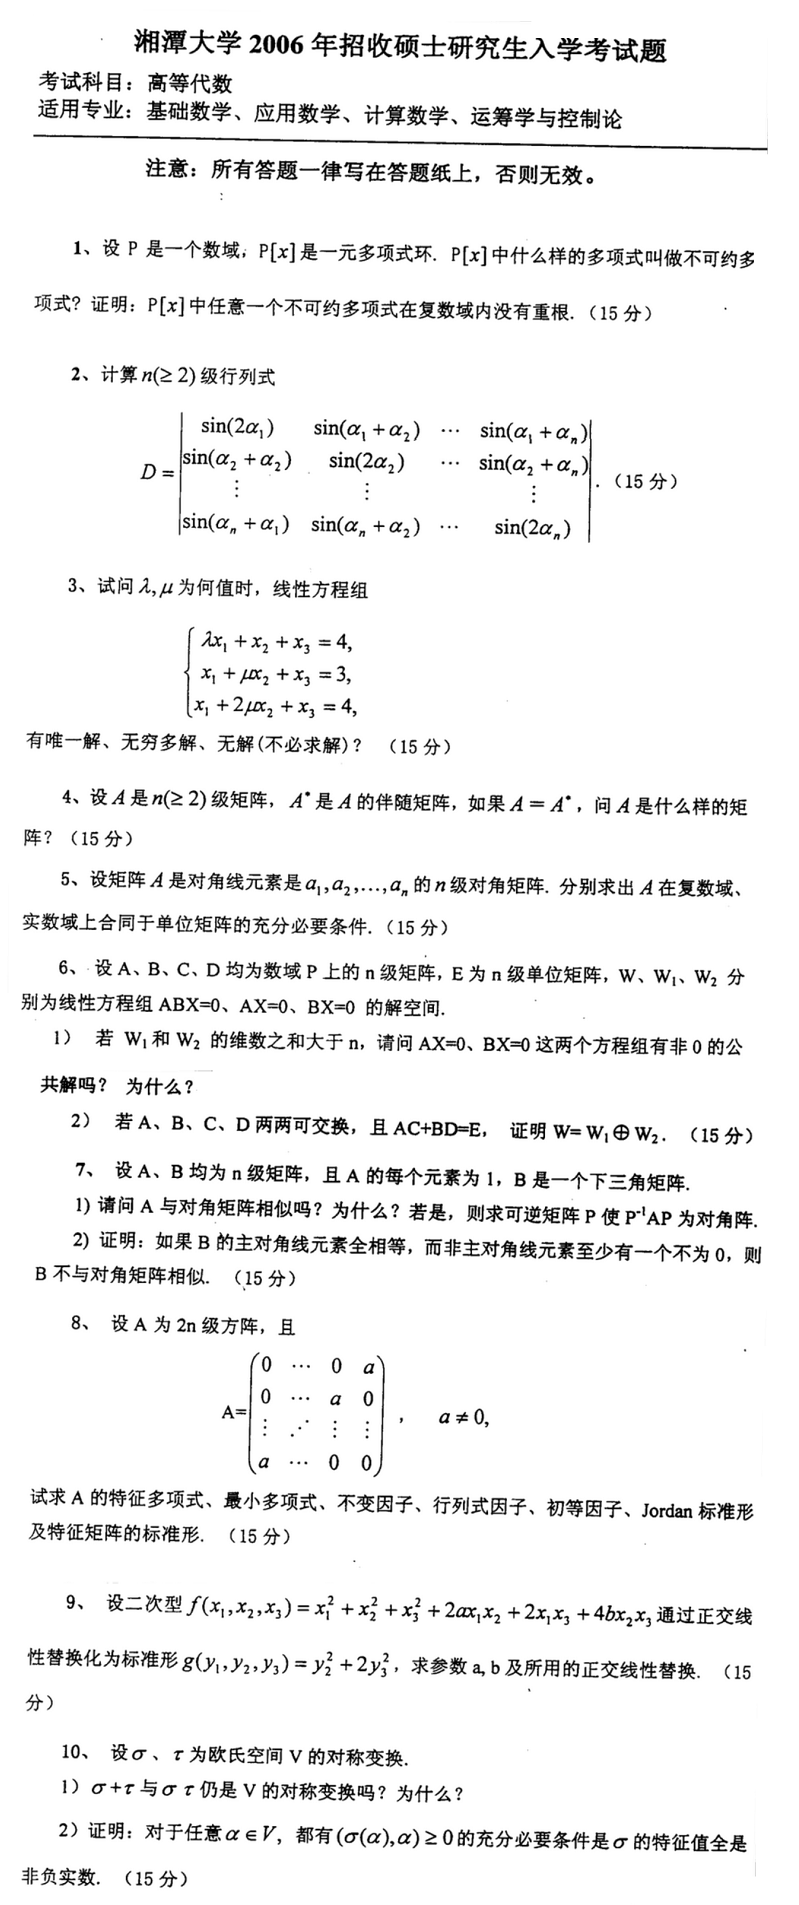 2006湘潭大学考研数学真题（高等代数）.png